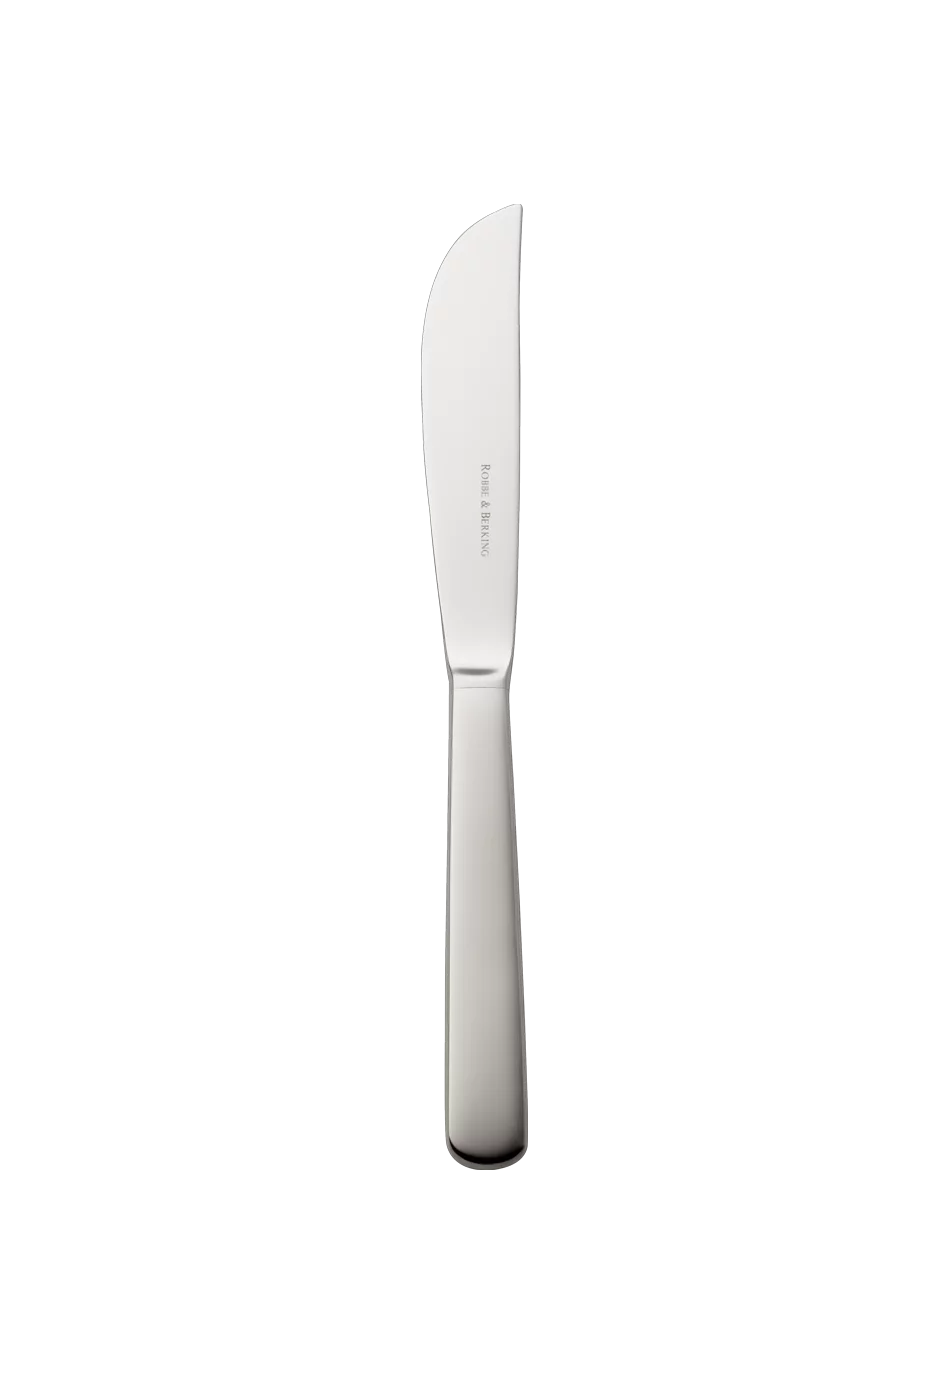 Atlantic Menu Knife (18/8 stainless steel)